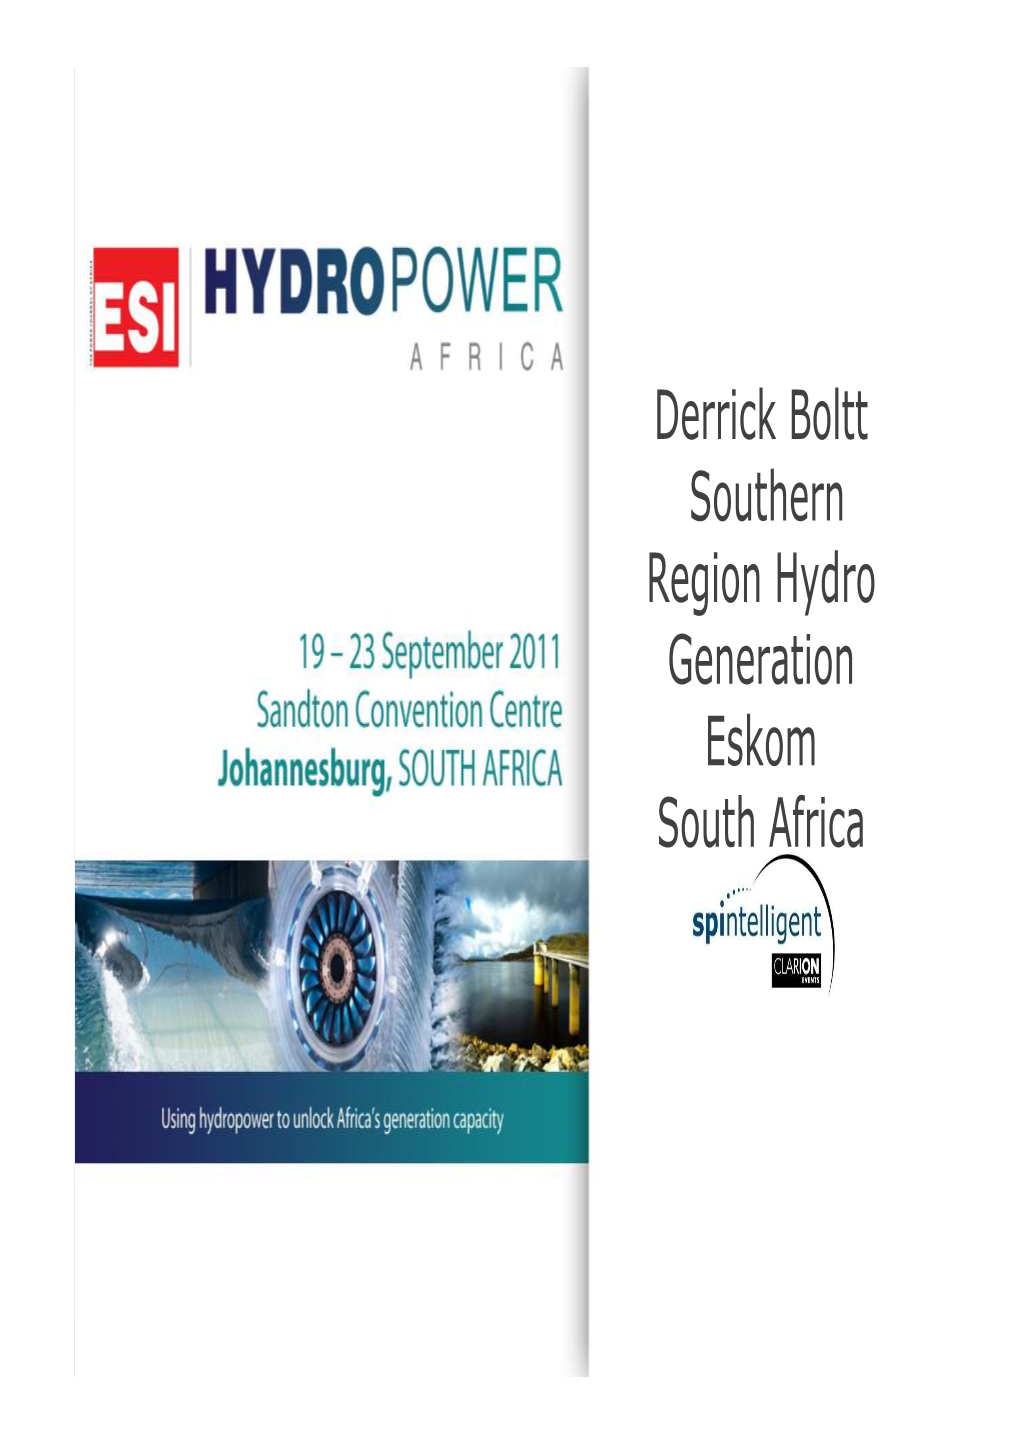 Derrick Boltt Southern Region Hydro Generation Eskom South Africa Hydro Power in the S/Region